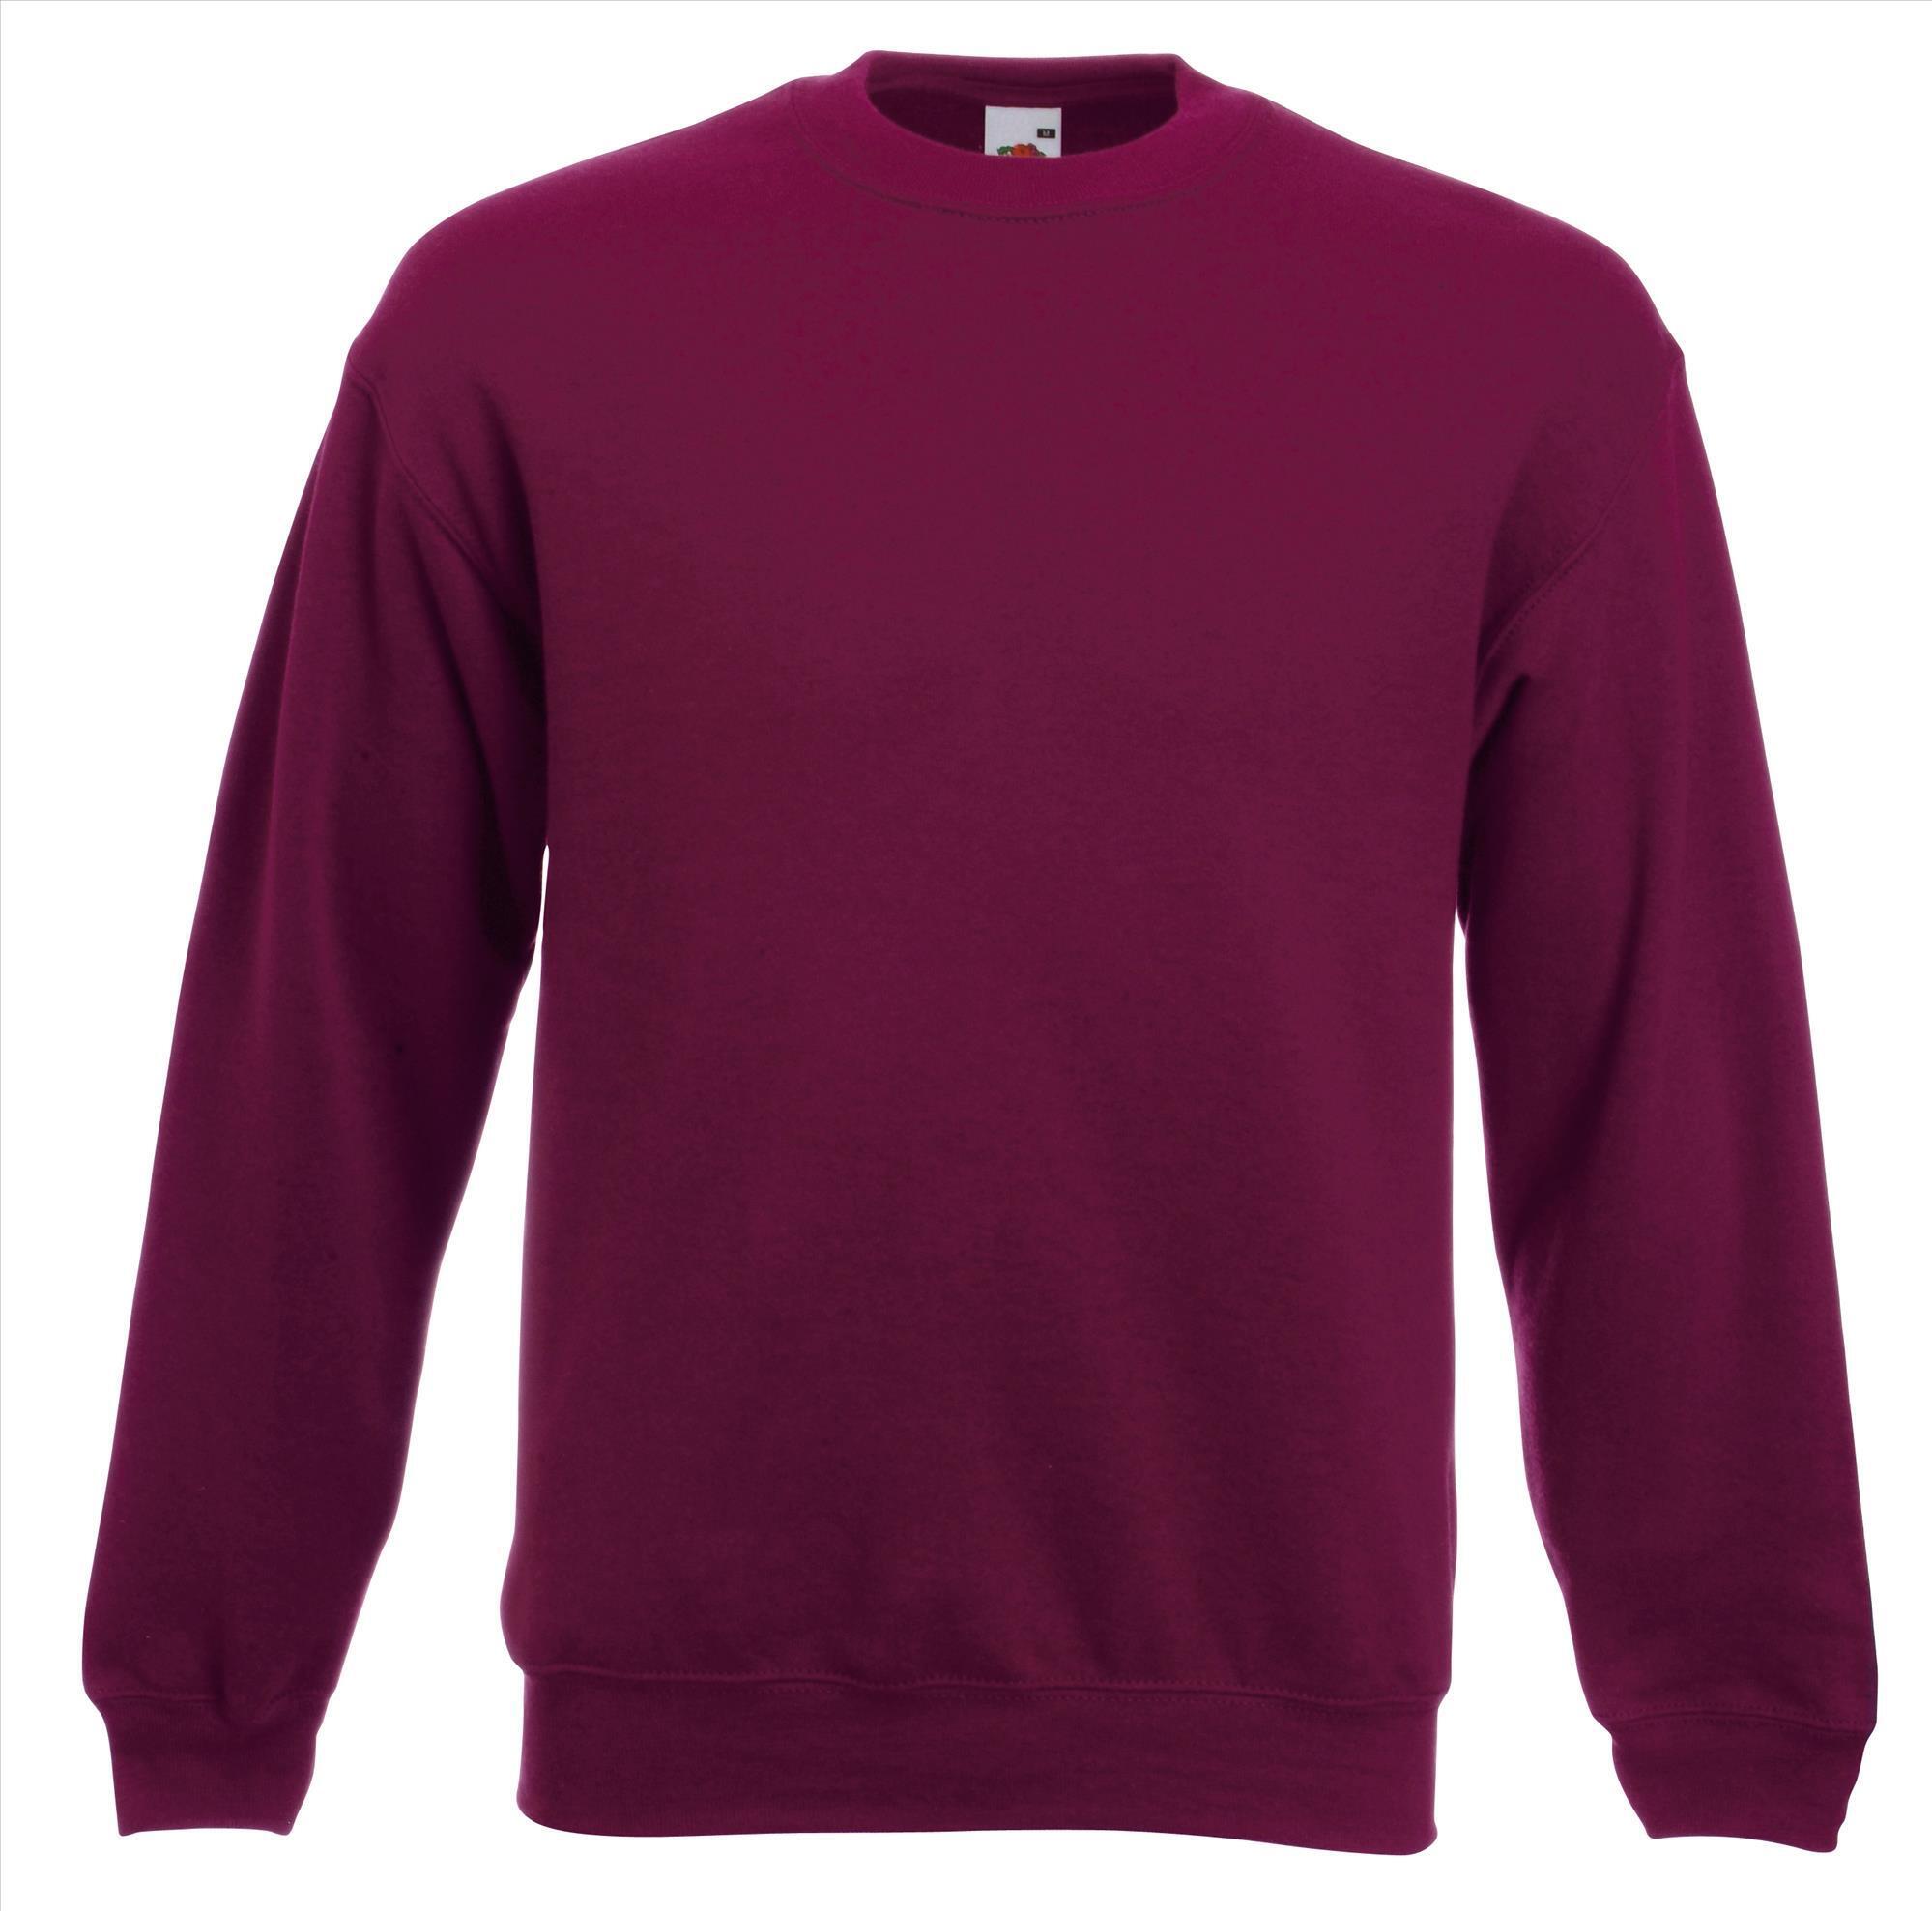 Burgundy trui sweater klassieke uitvoering unisex